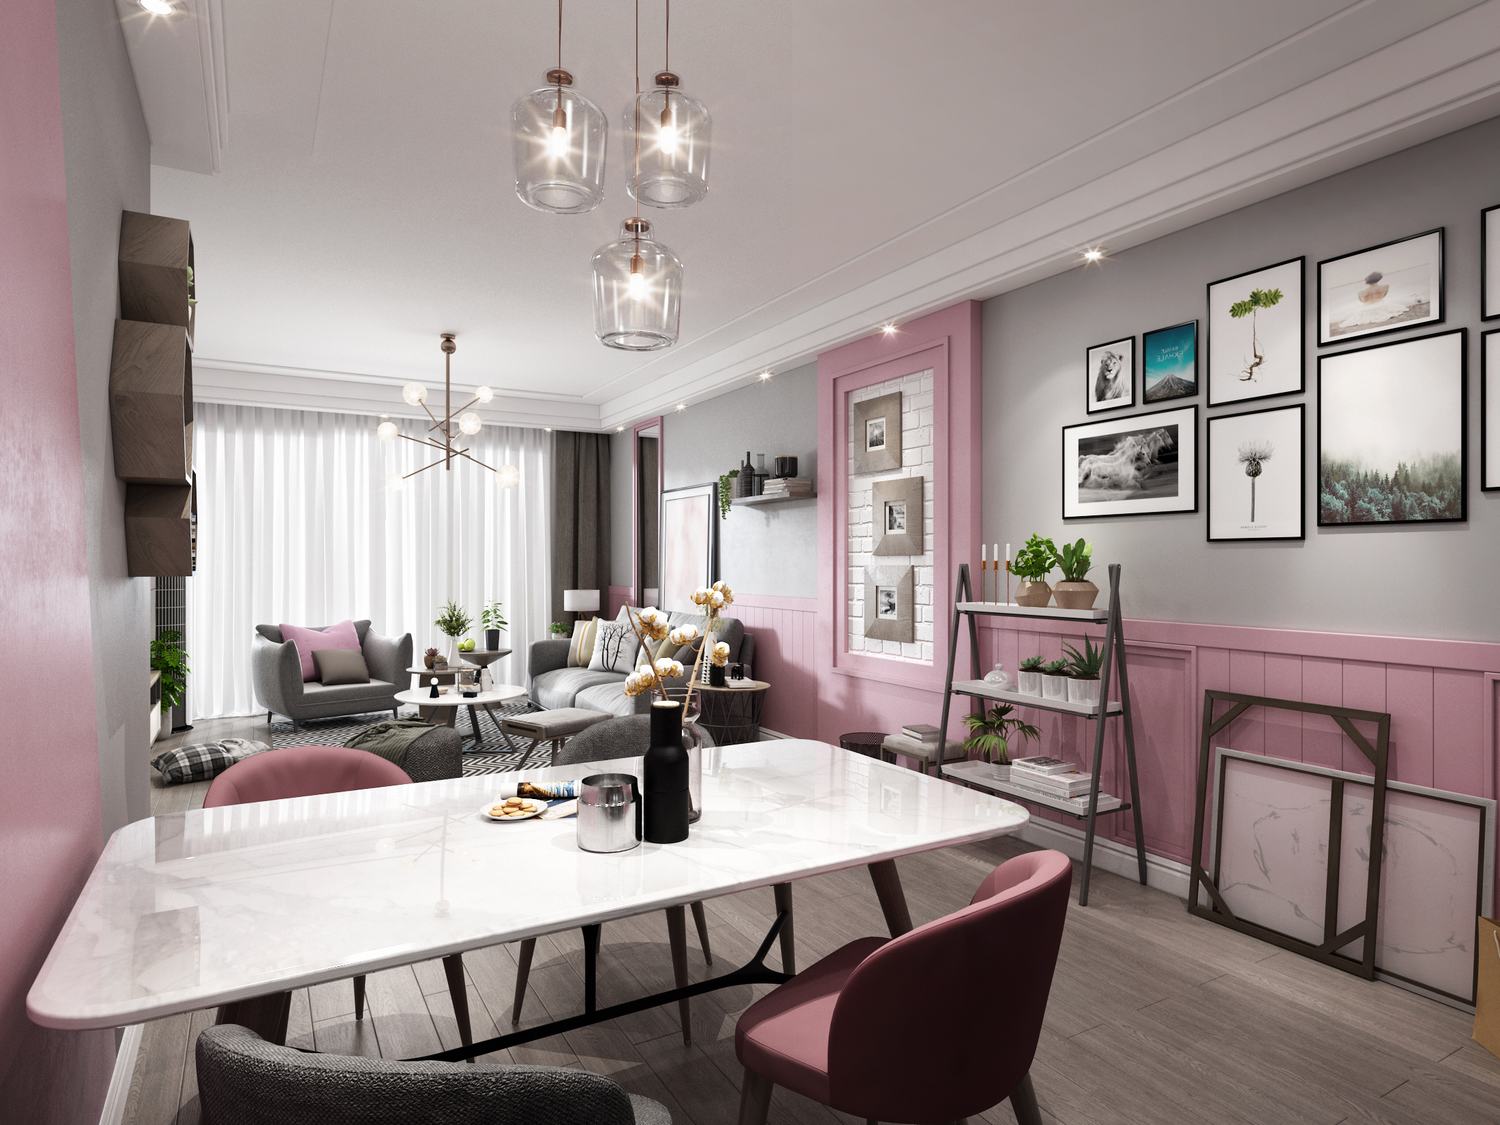 二居 客厅 卧室 厨房 餐厅图片来自云南俊雅装饰工程有限公司在粉色北欧的分享